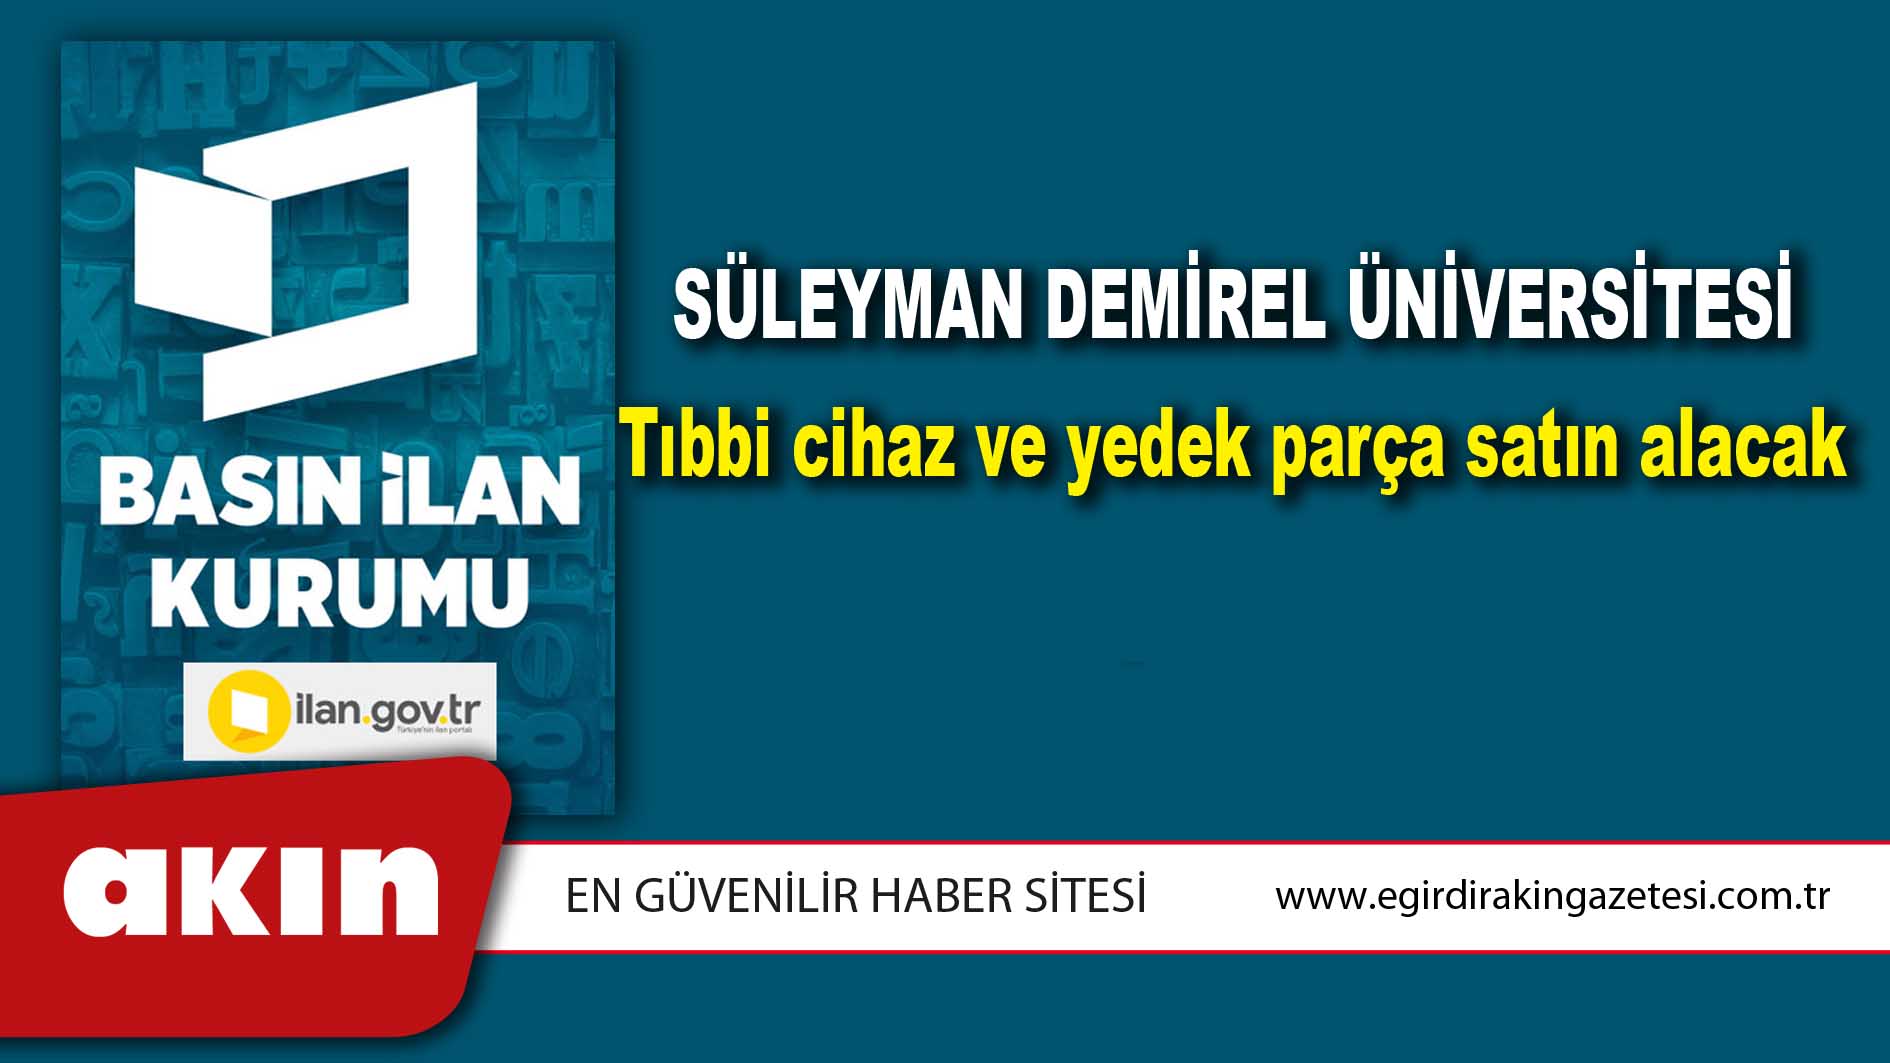 Süleyman Demirel Üniversitesi Tıbbi cihaz ve yedek parça satın alacak